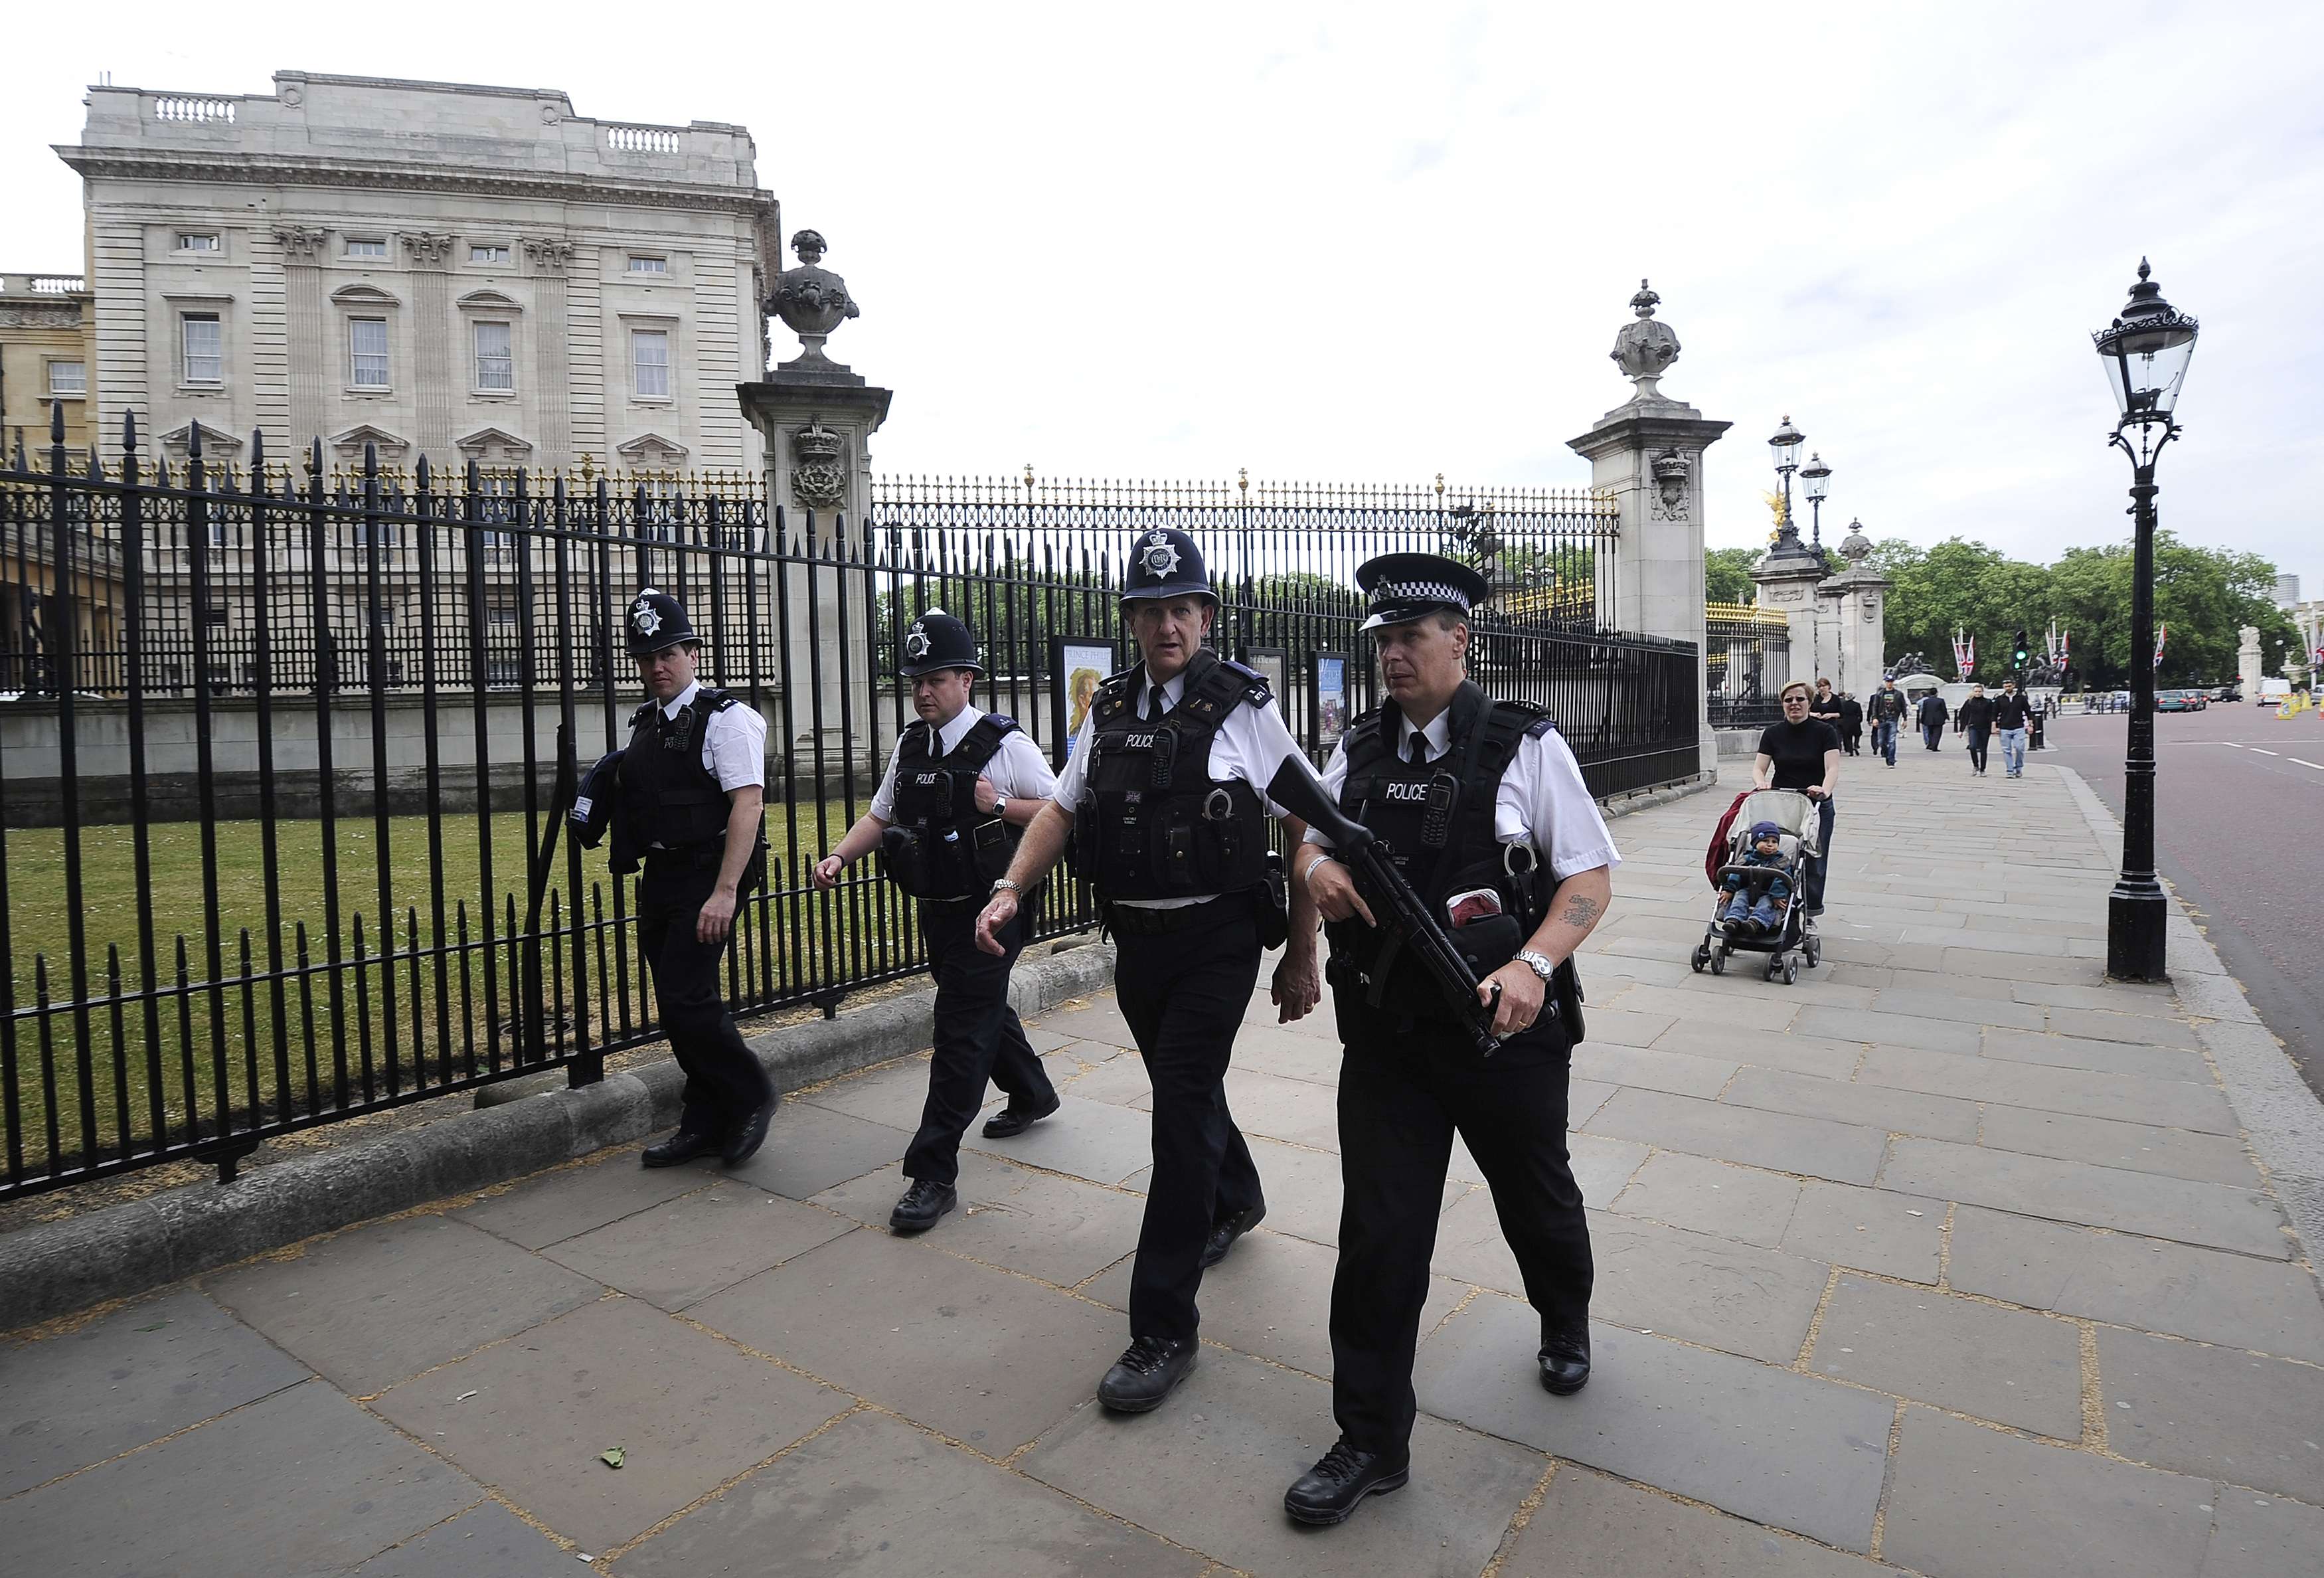 Police to be the queen. Британская полиция Букингемского дворца. Полиция Великобритании. Полицейский дворец. Британское отделение полиции.